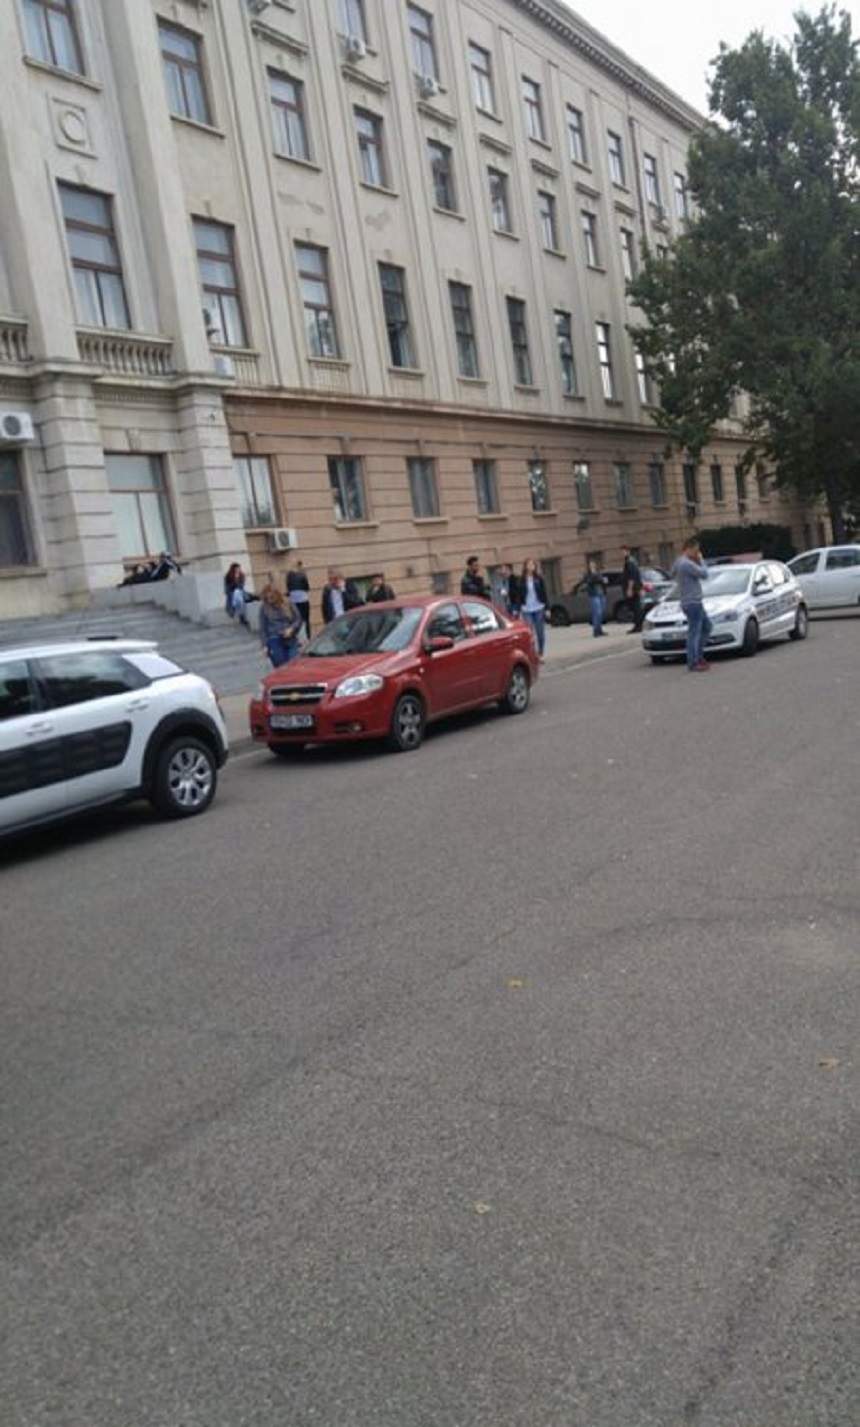 Stare de alertă la Universitatea Alexandru Ioan Cuza! O femeie ameninţă că se aruncă de la etaj